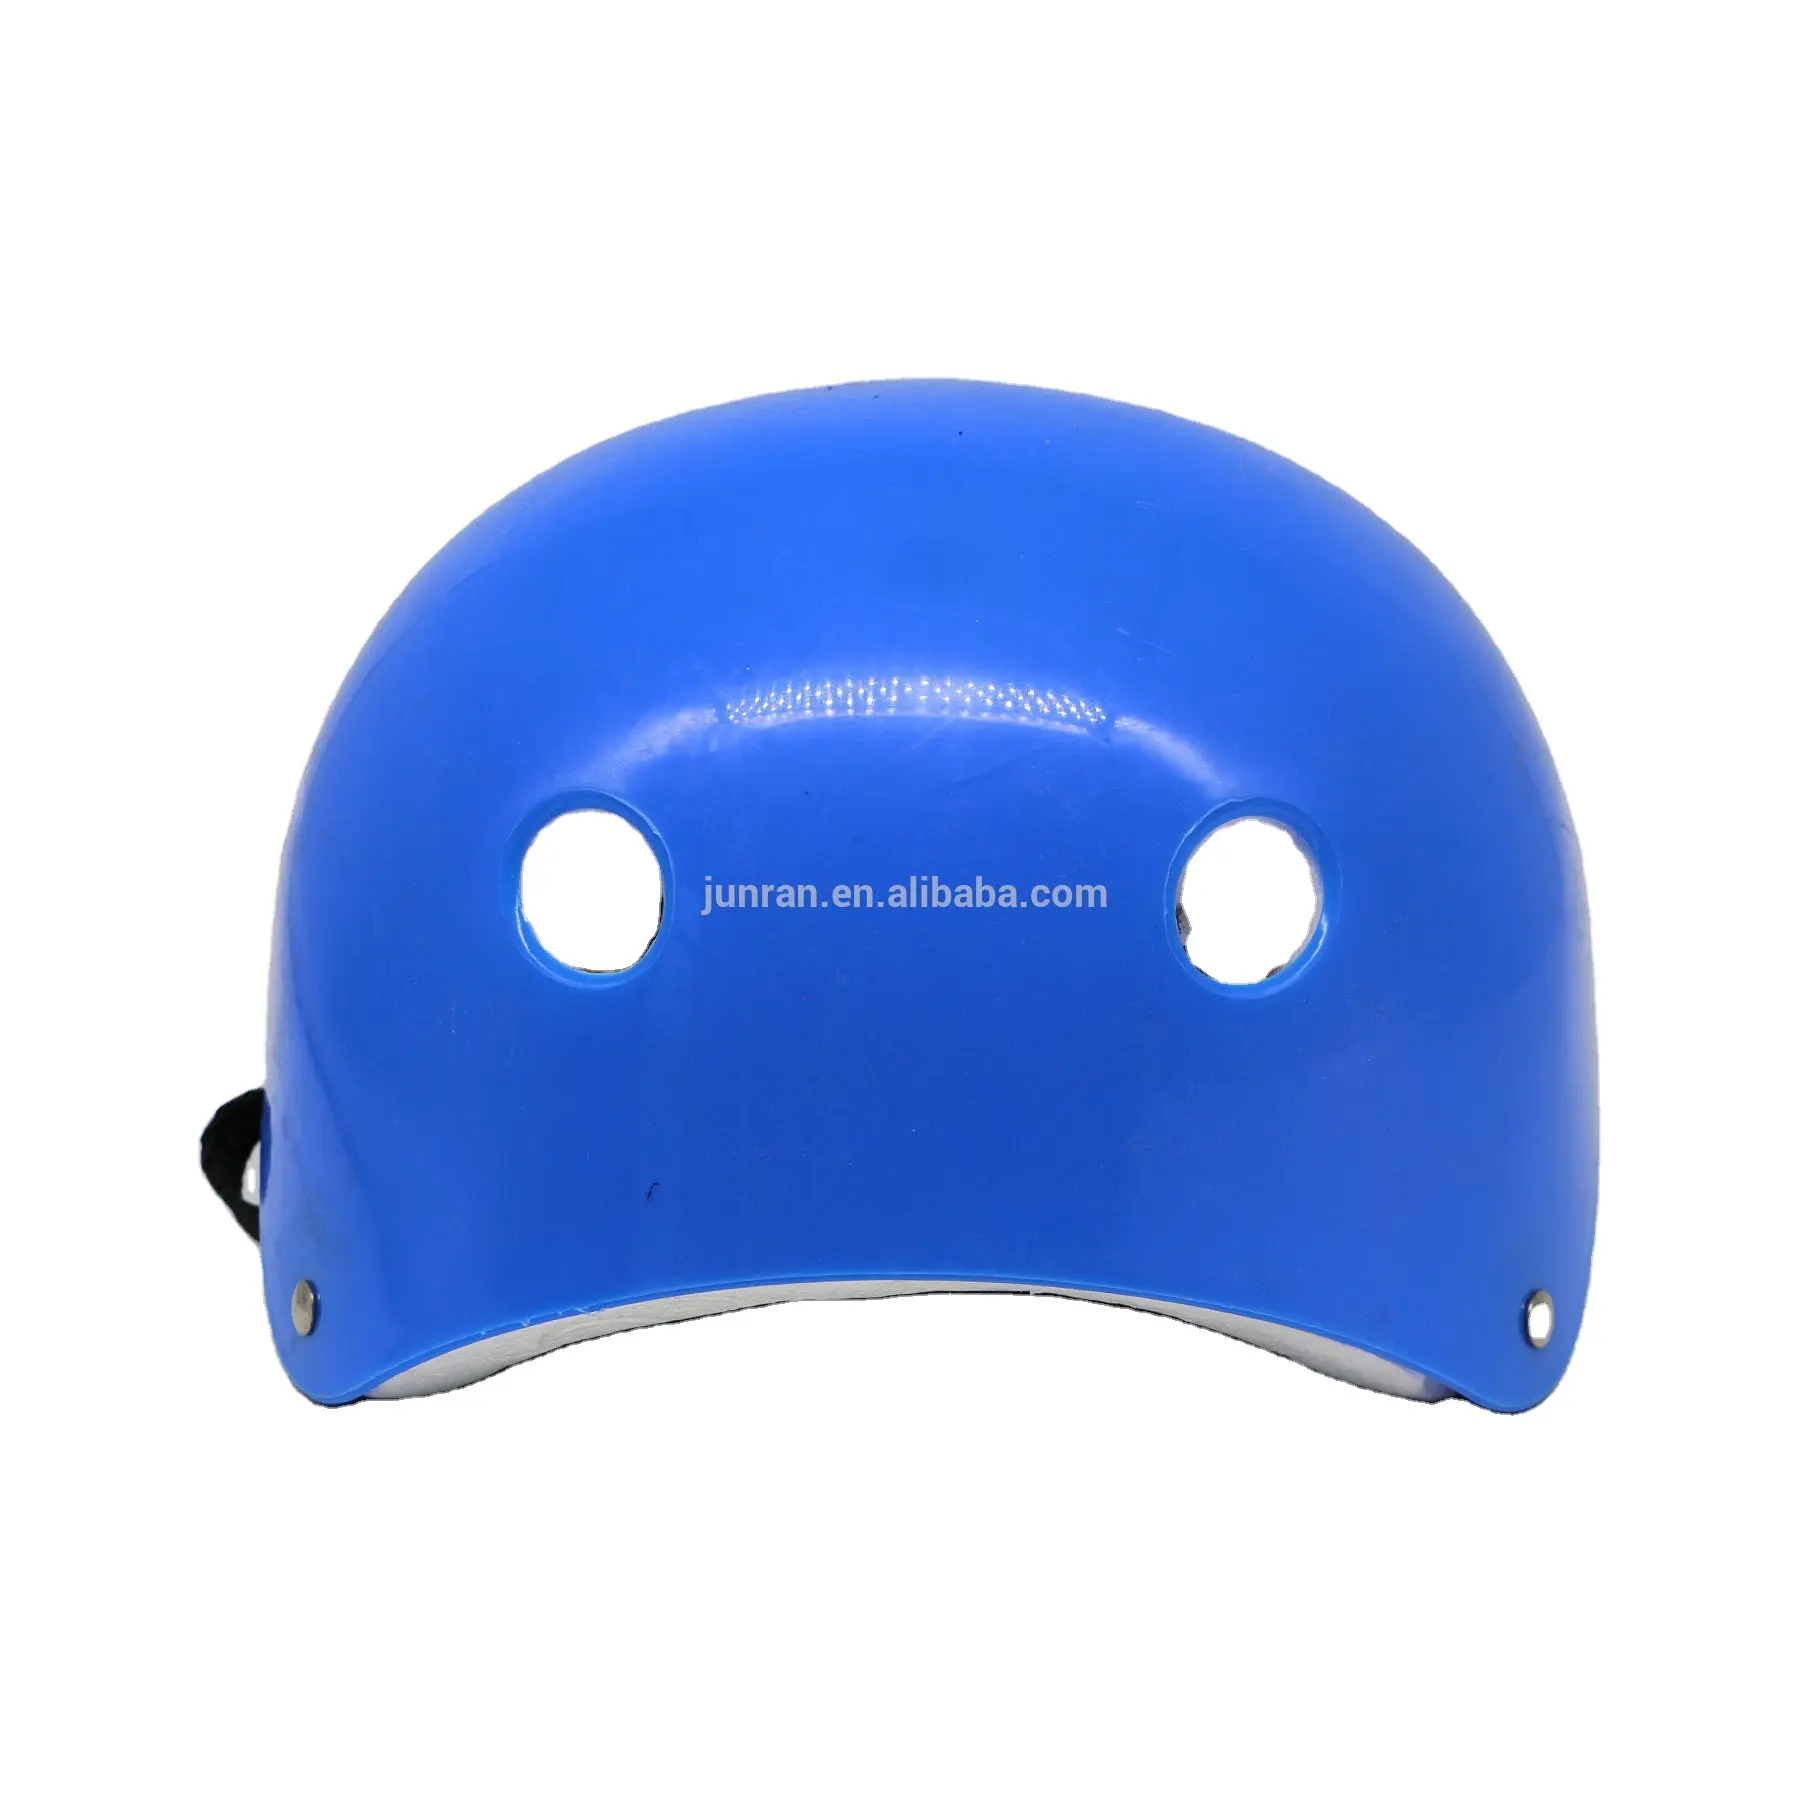 Продажа шлемов EPS pro tec